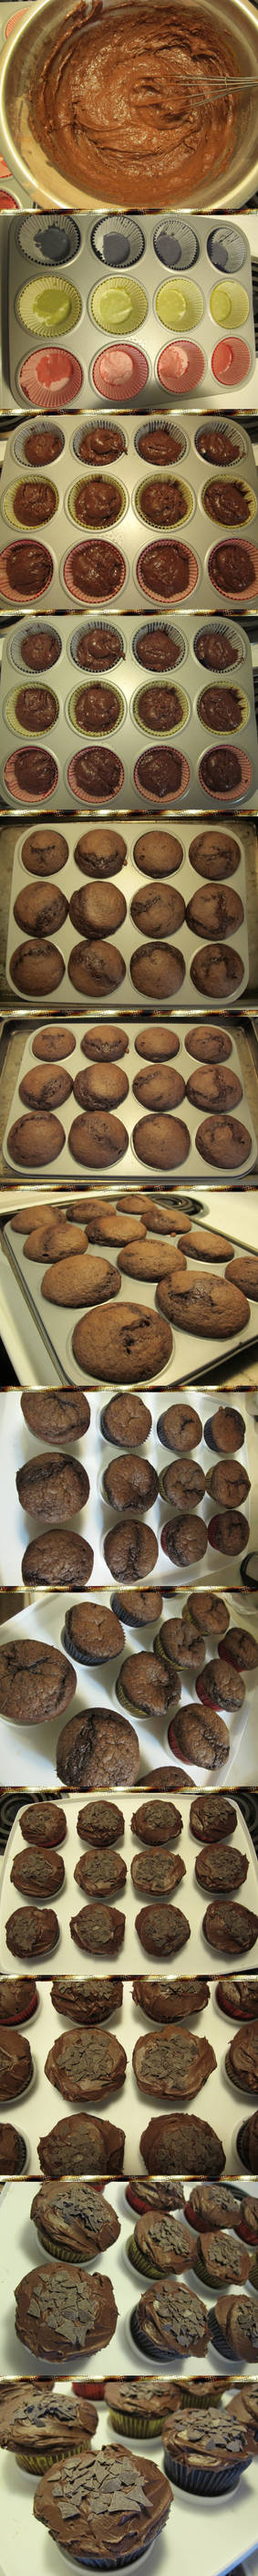 Black Forest Cupcake Recipe